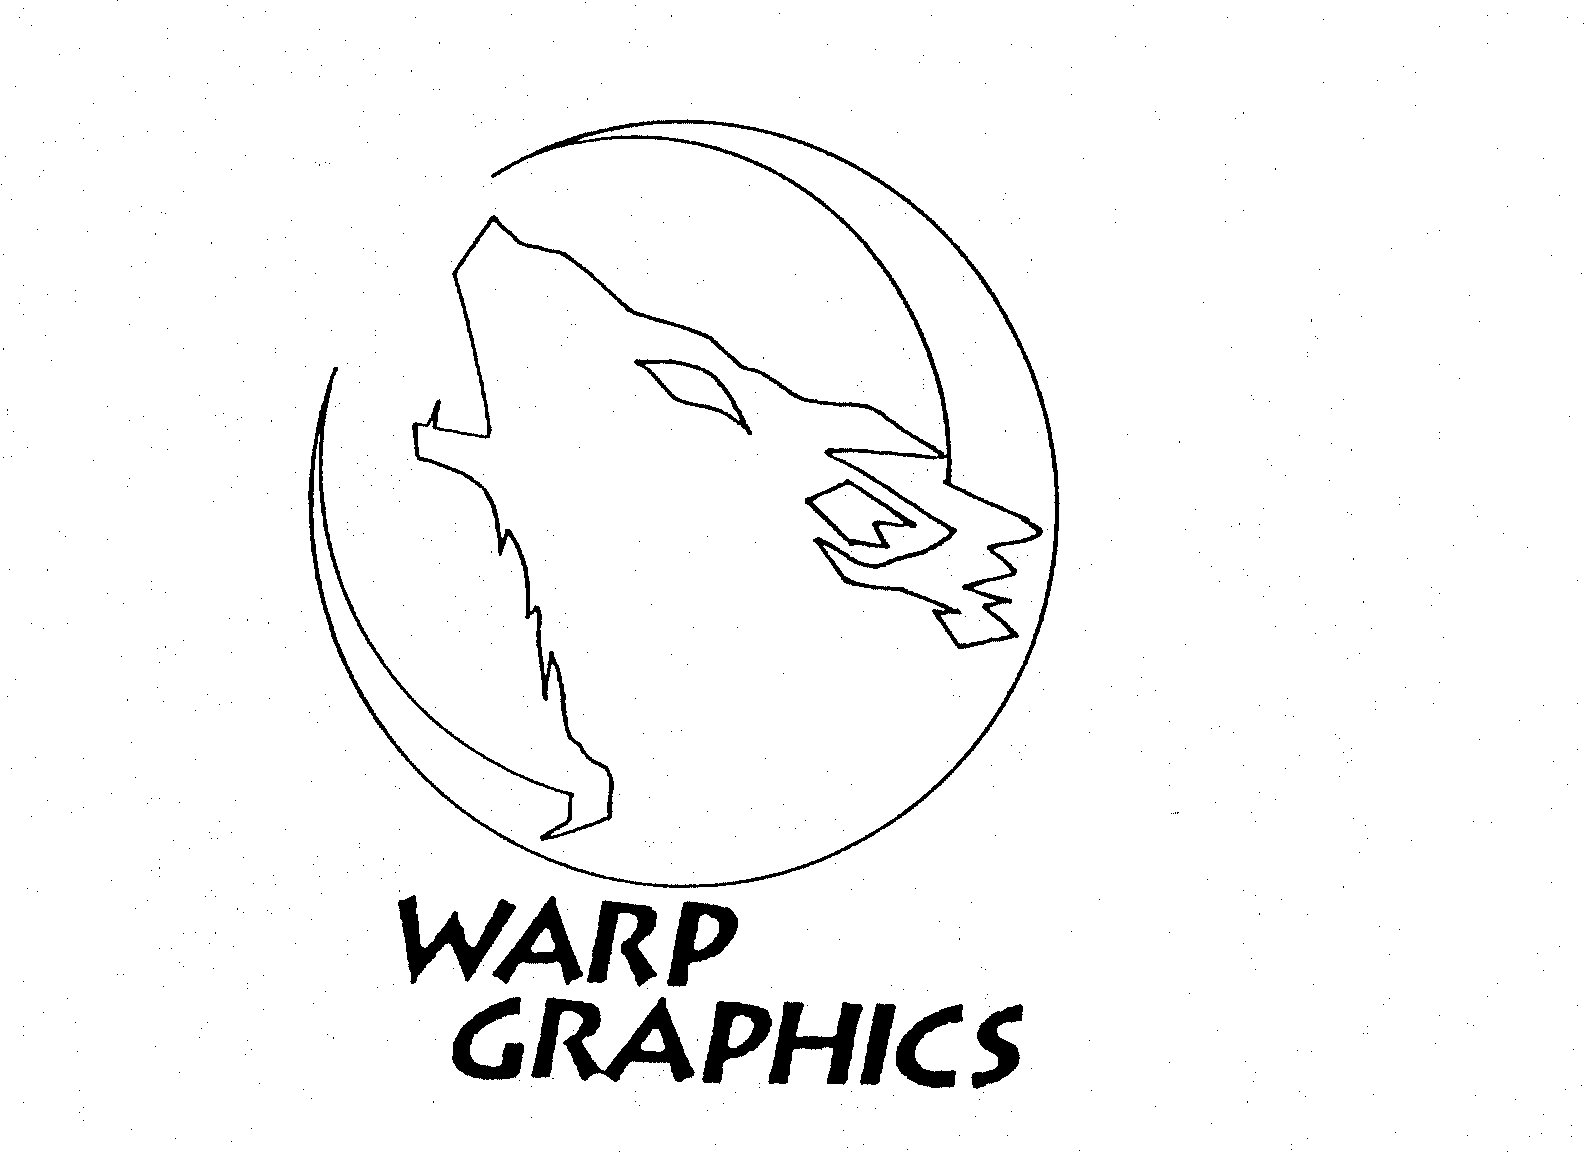  WARP GRAPHICS